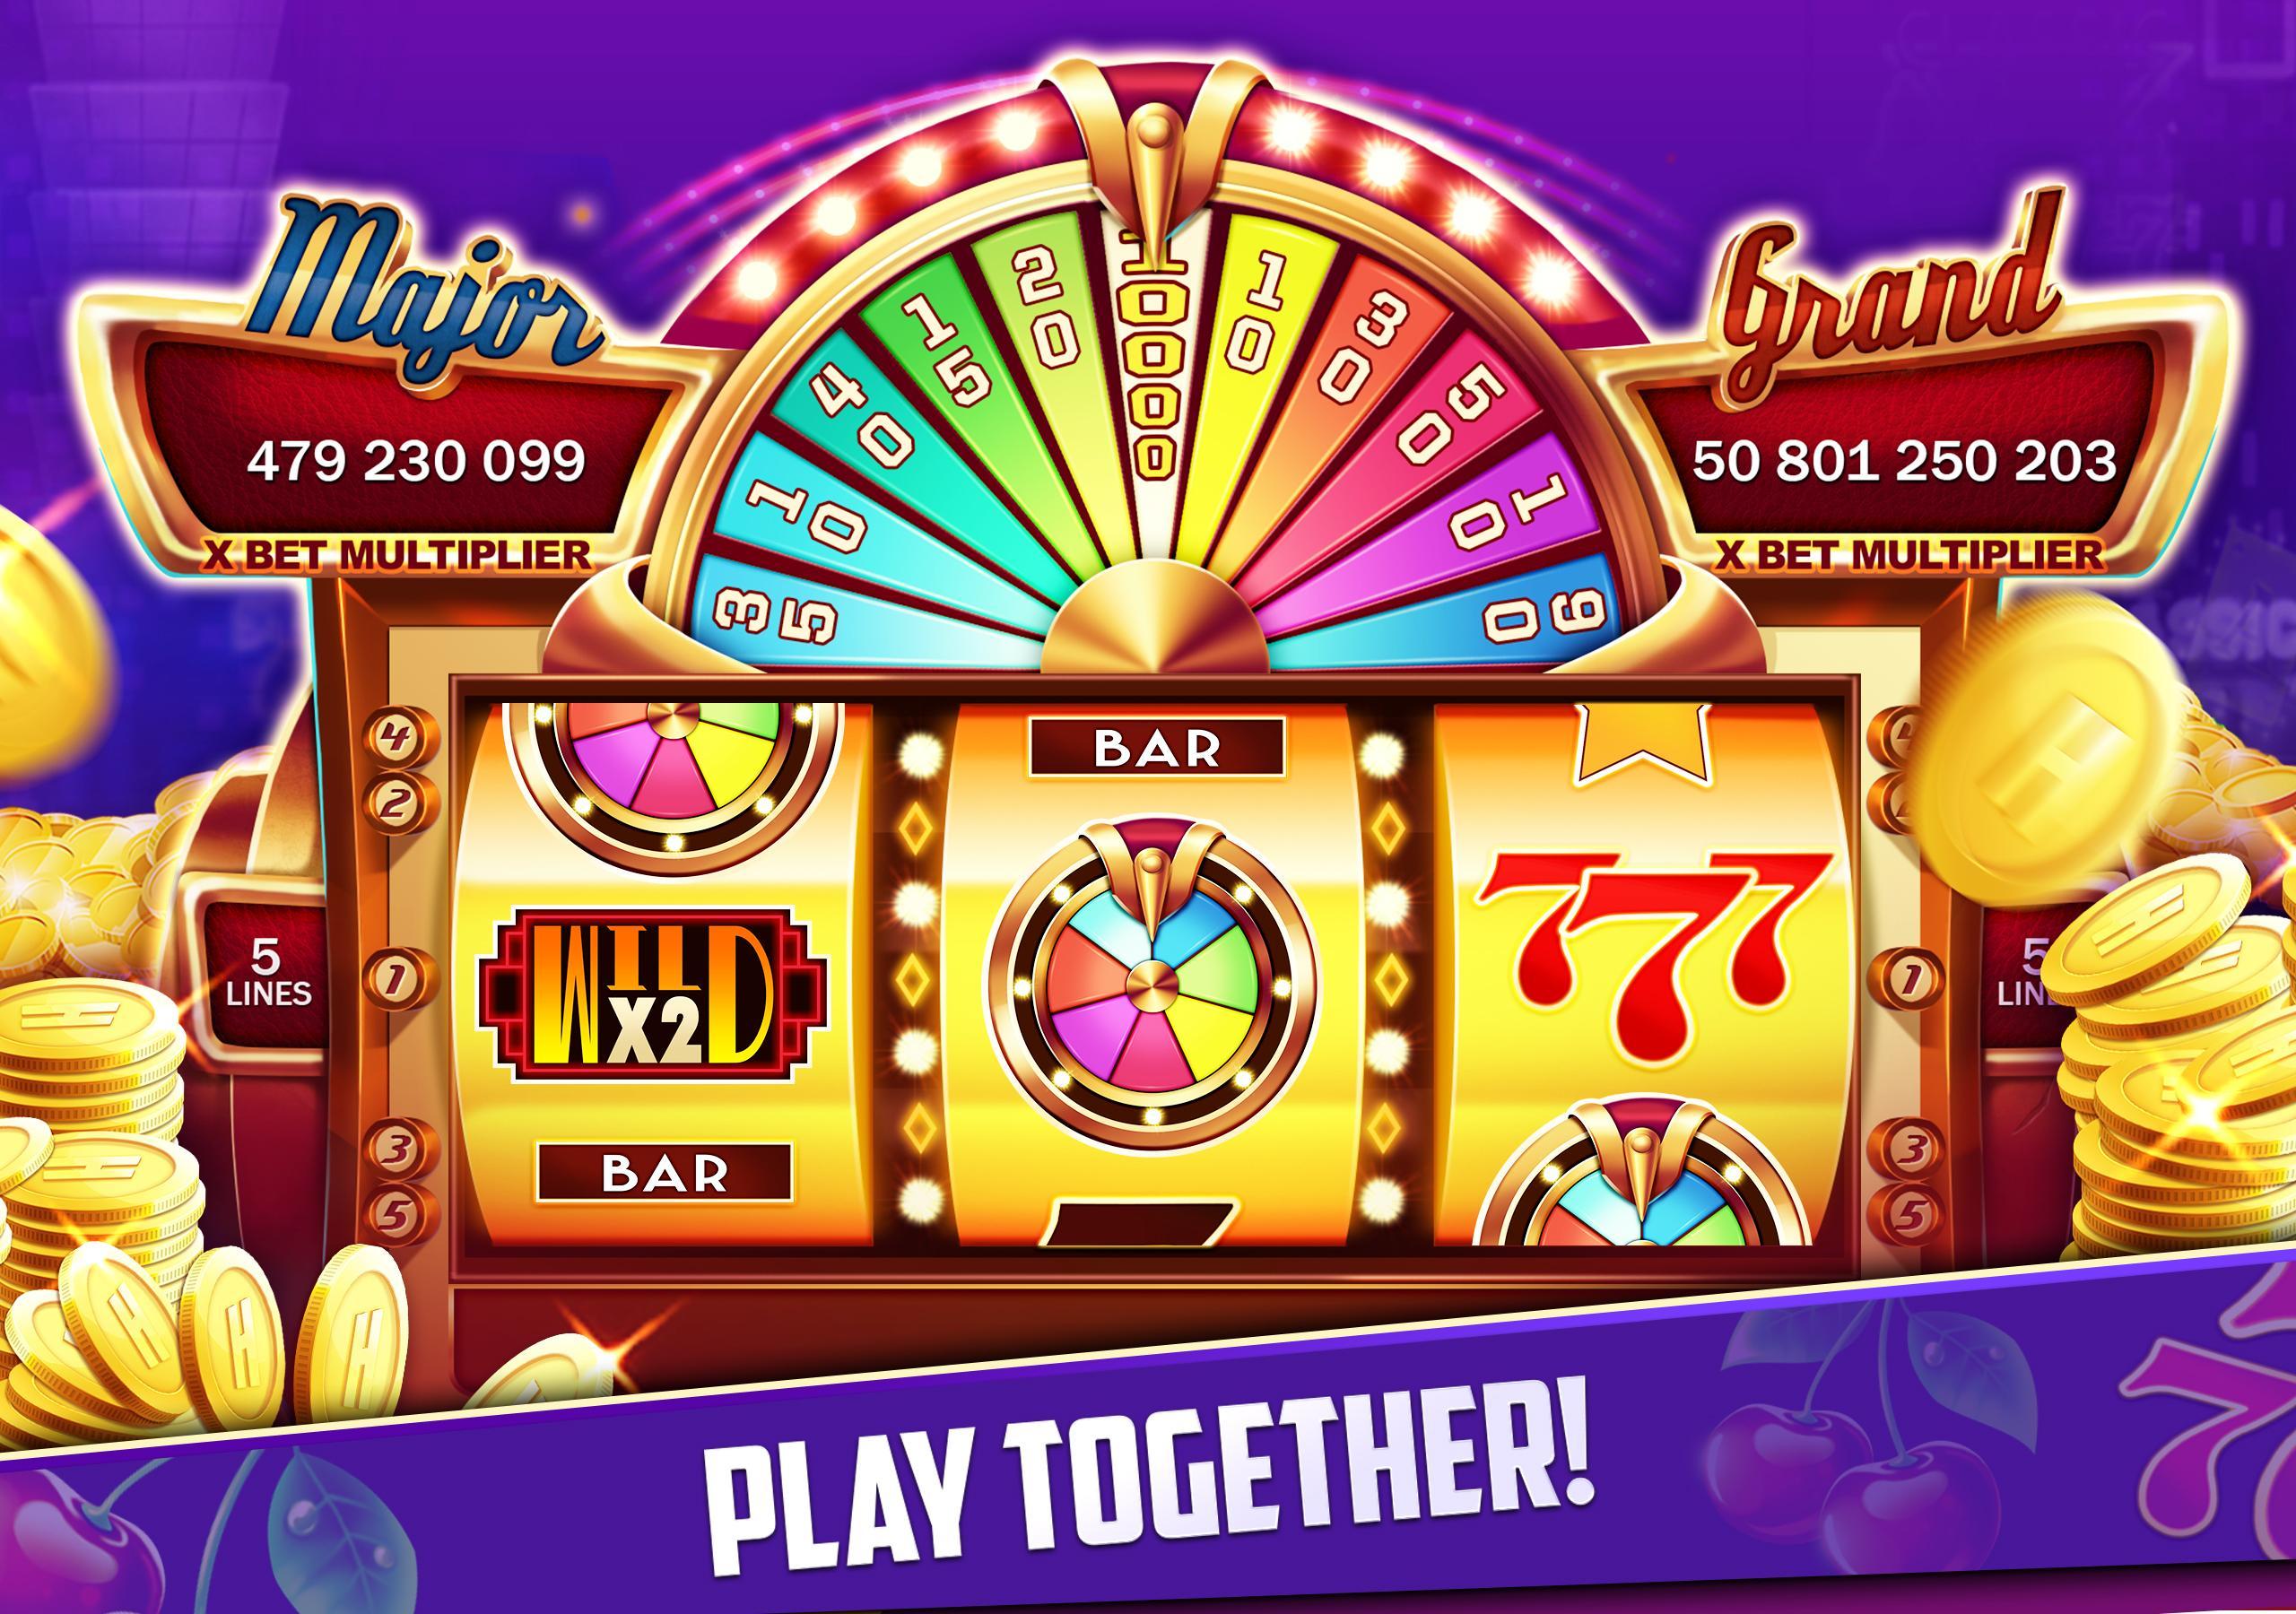 Stars Slots Casino - Vegas Slot Machines 1.0.1366 Screenshot 14